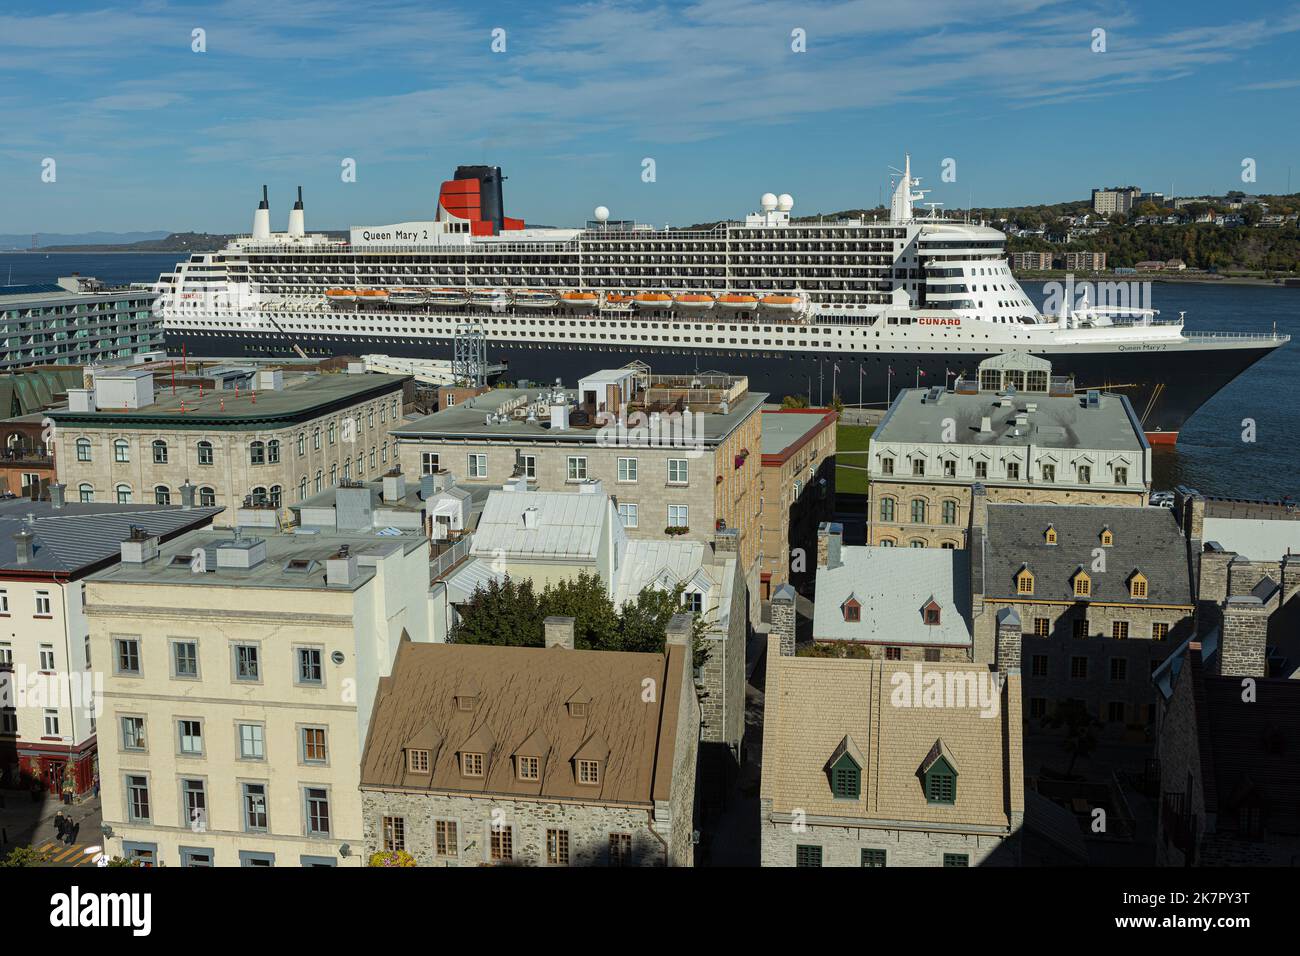 La nave da crociera Queen Mary 2 è vista come uno sfondo del vecchio Quebec (Vieux-Quebec) il 30 settembre 2022. Foto Stock